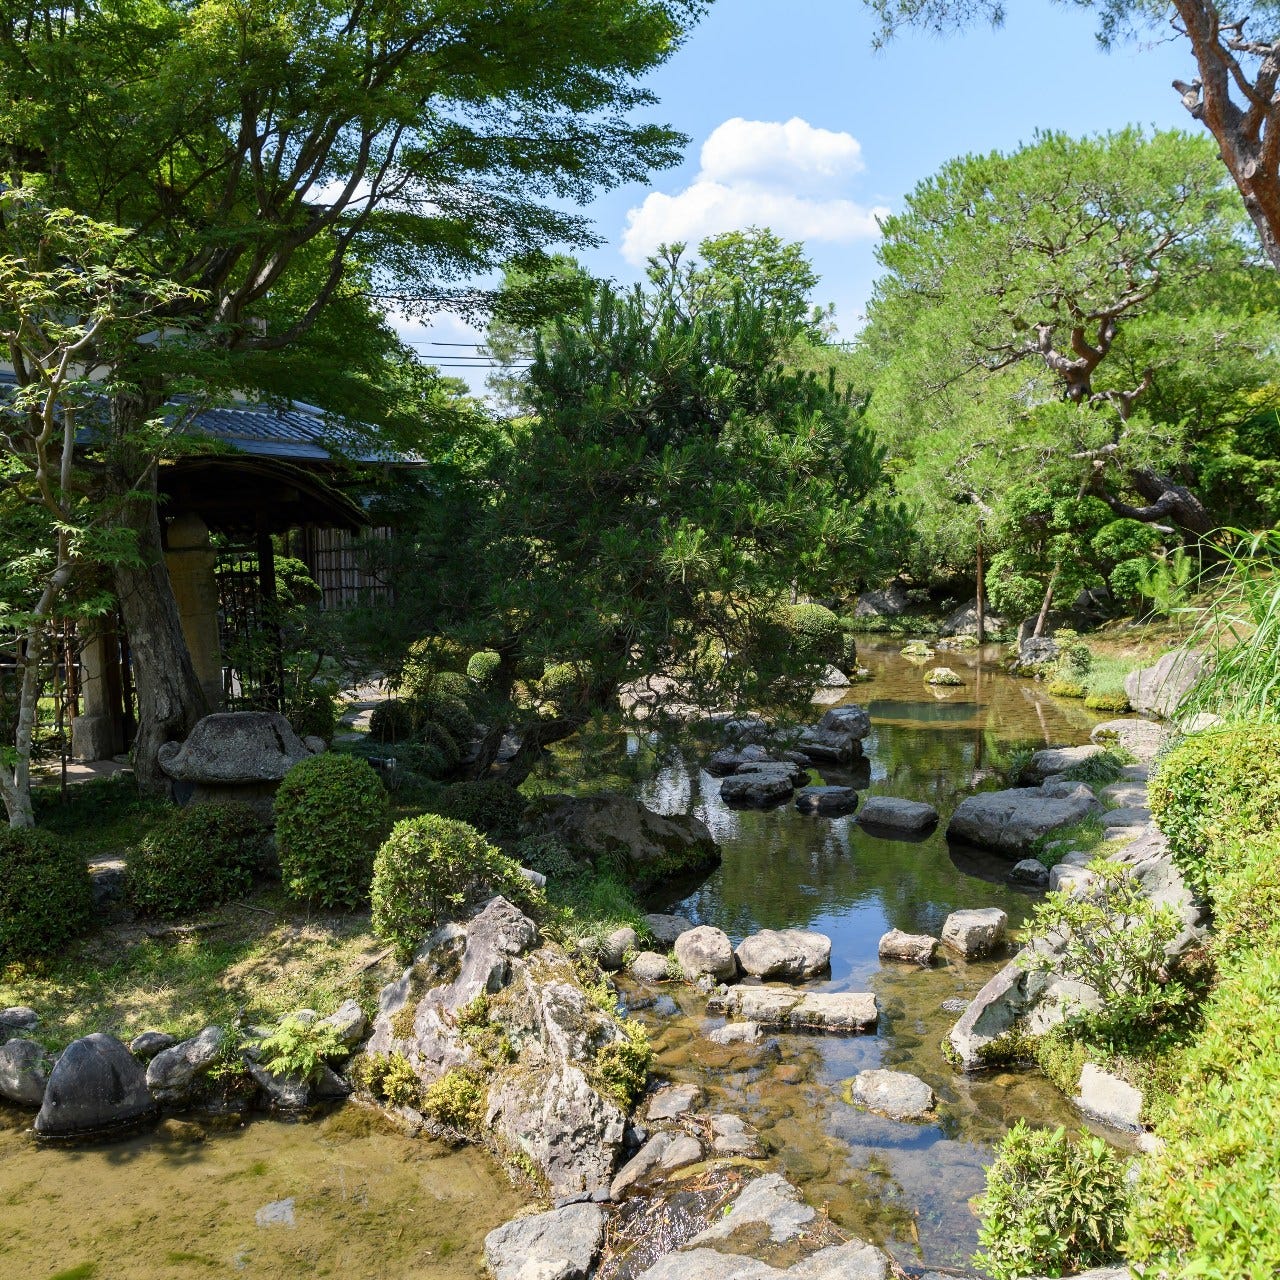 【通常非公開】
7代目小川治兵作の日本庭園を御散策頂けます。